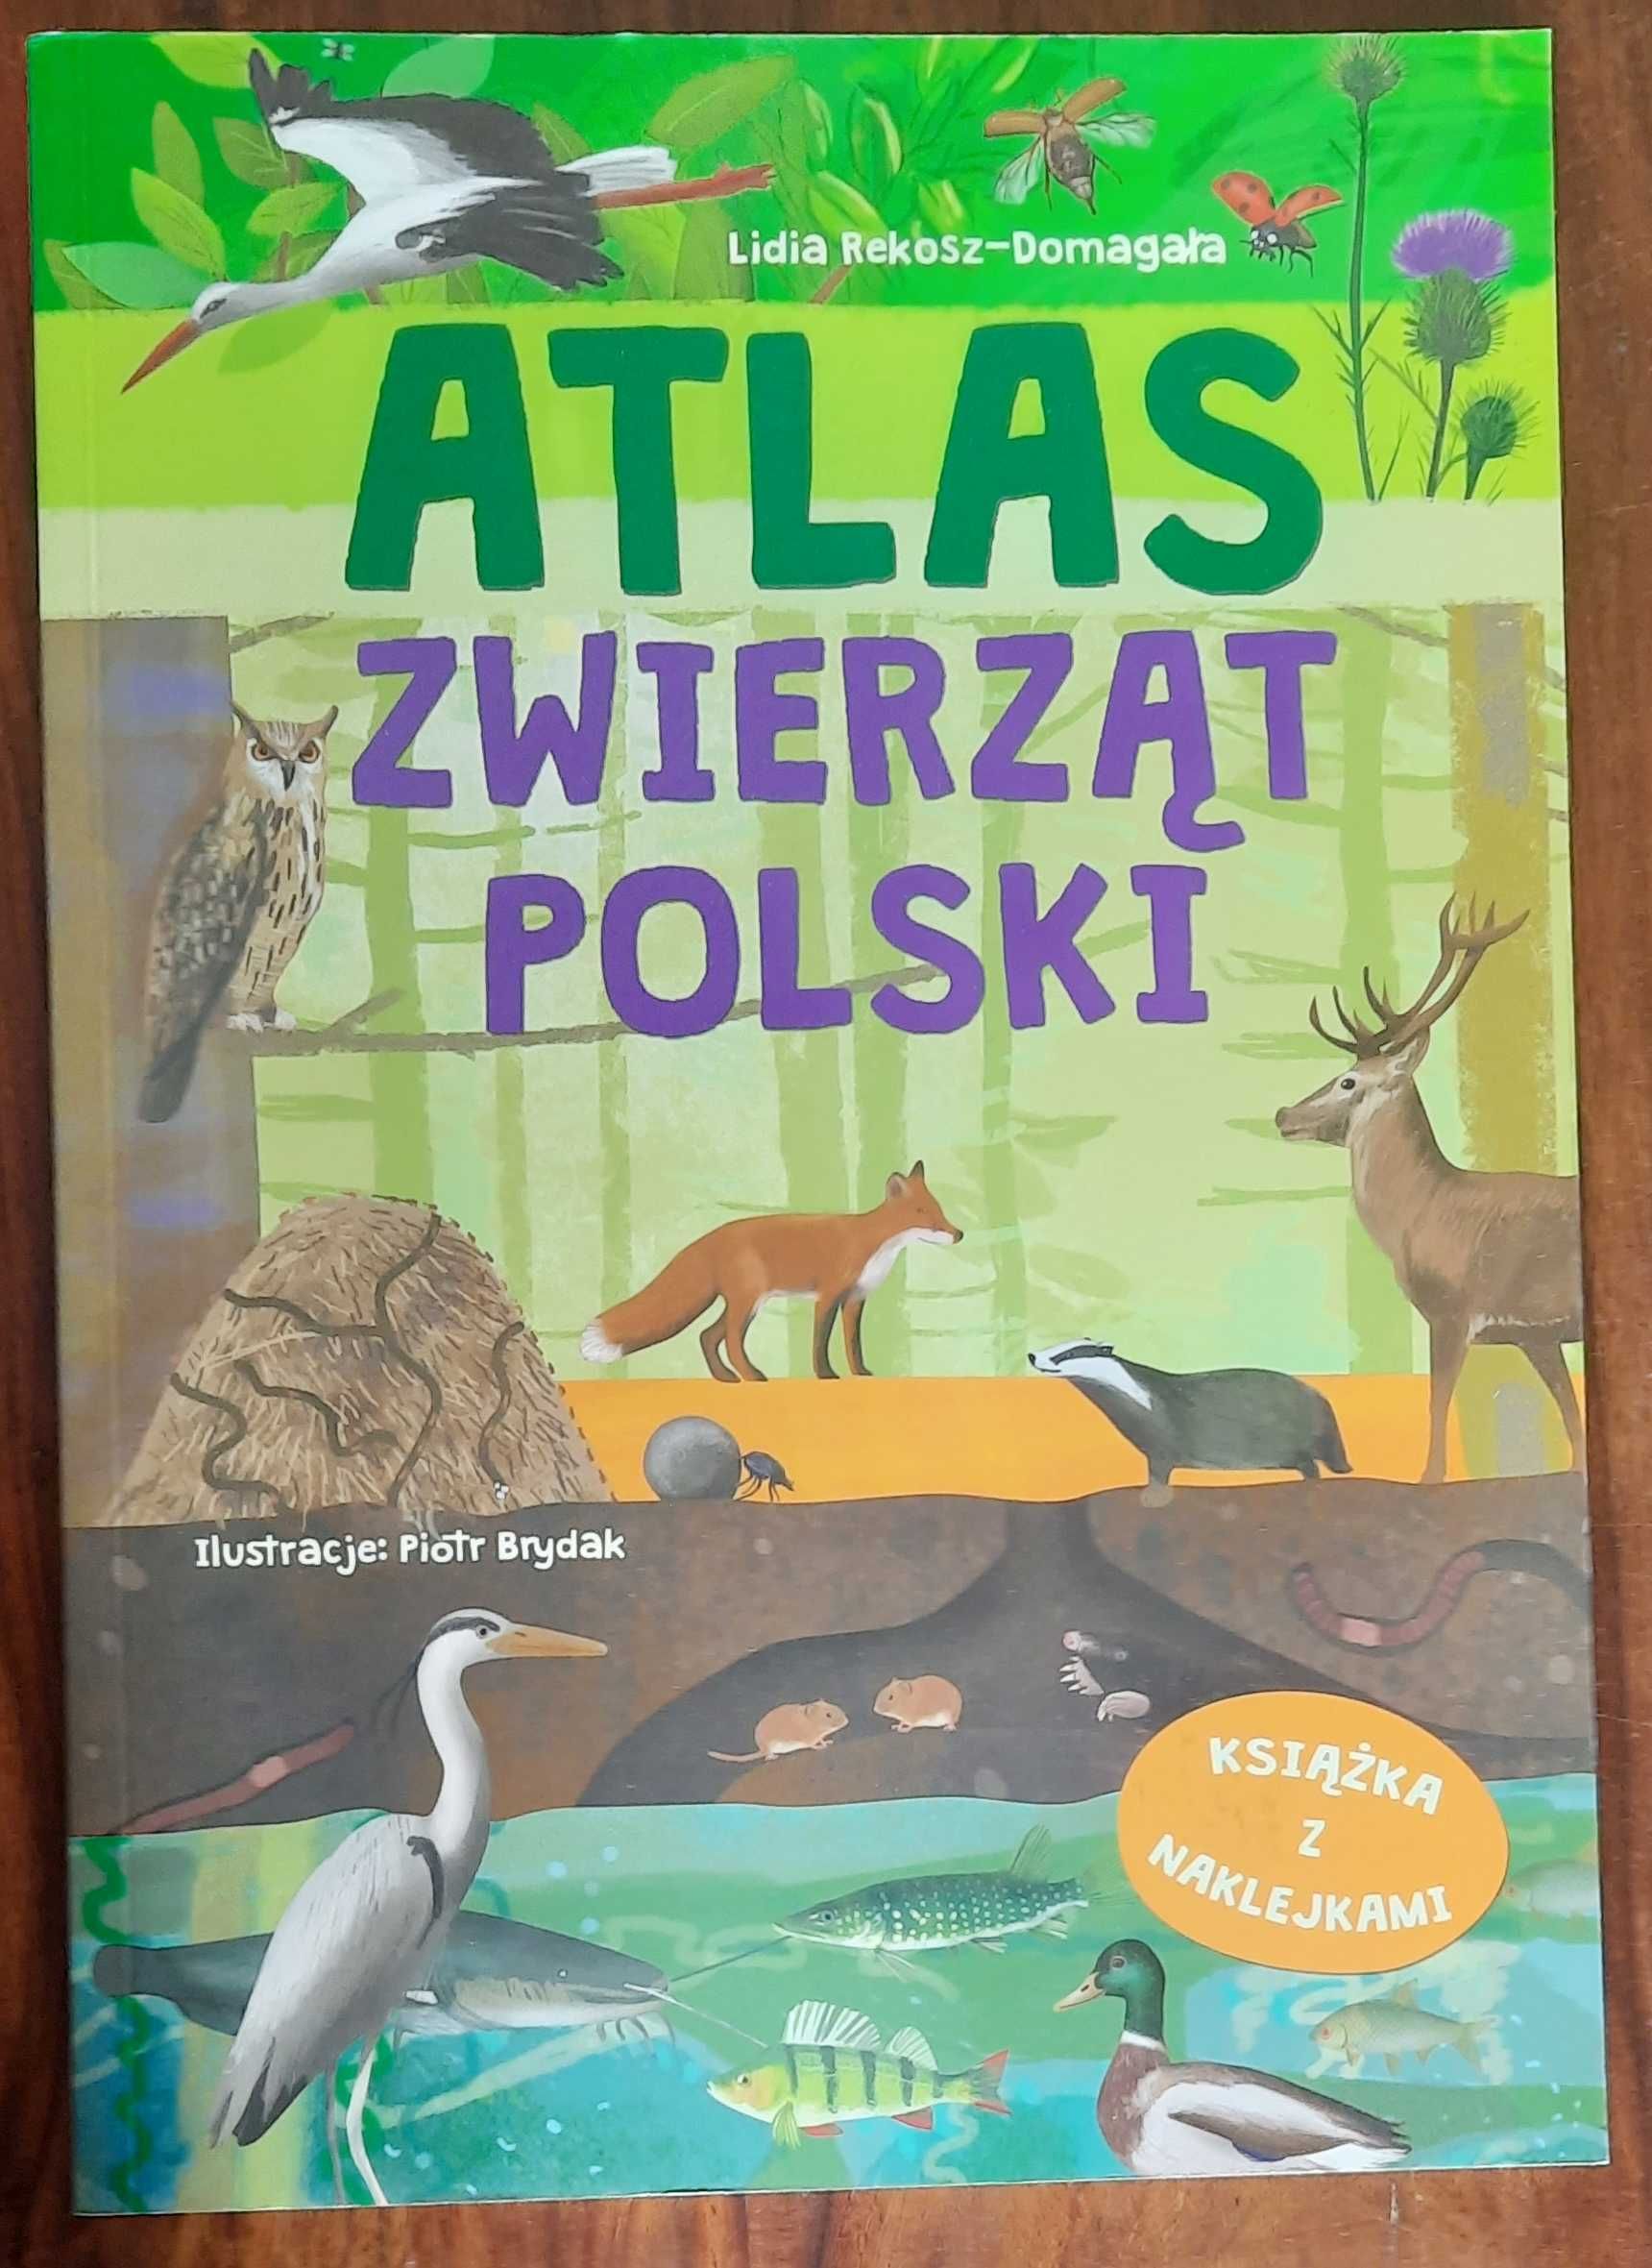 książka dla dzieci pt. "Atlas zwierząt Polski"